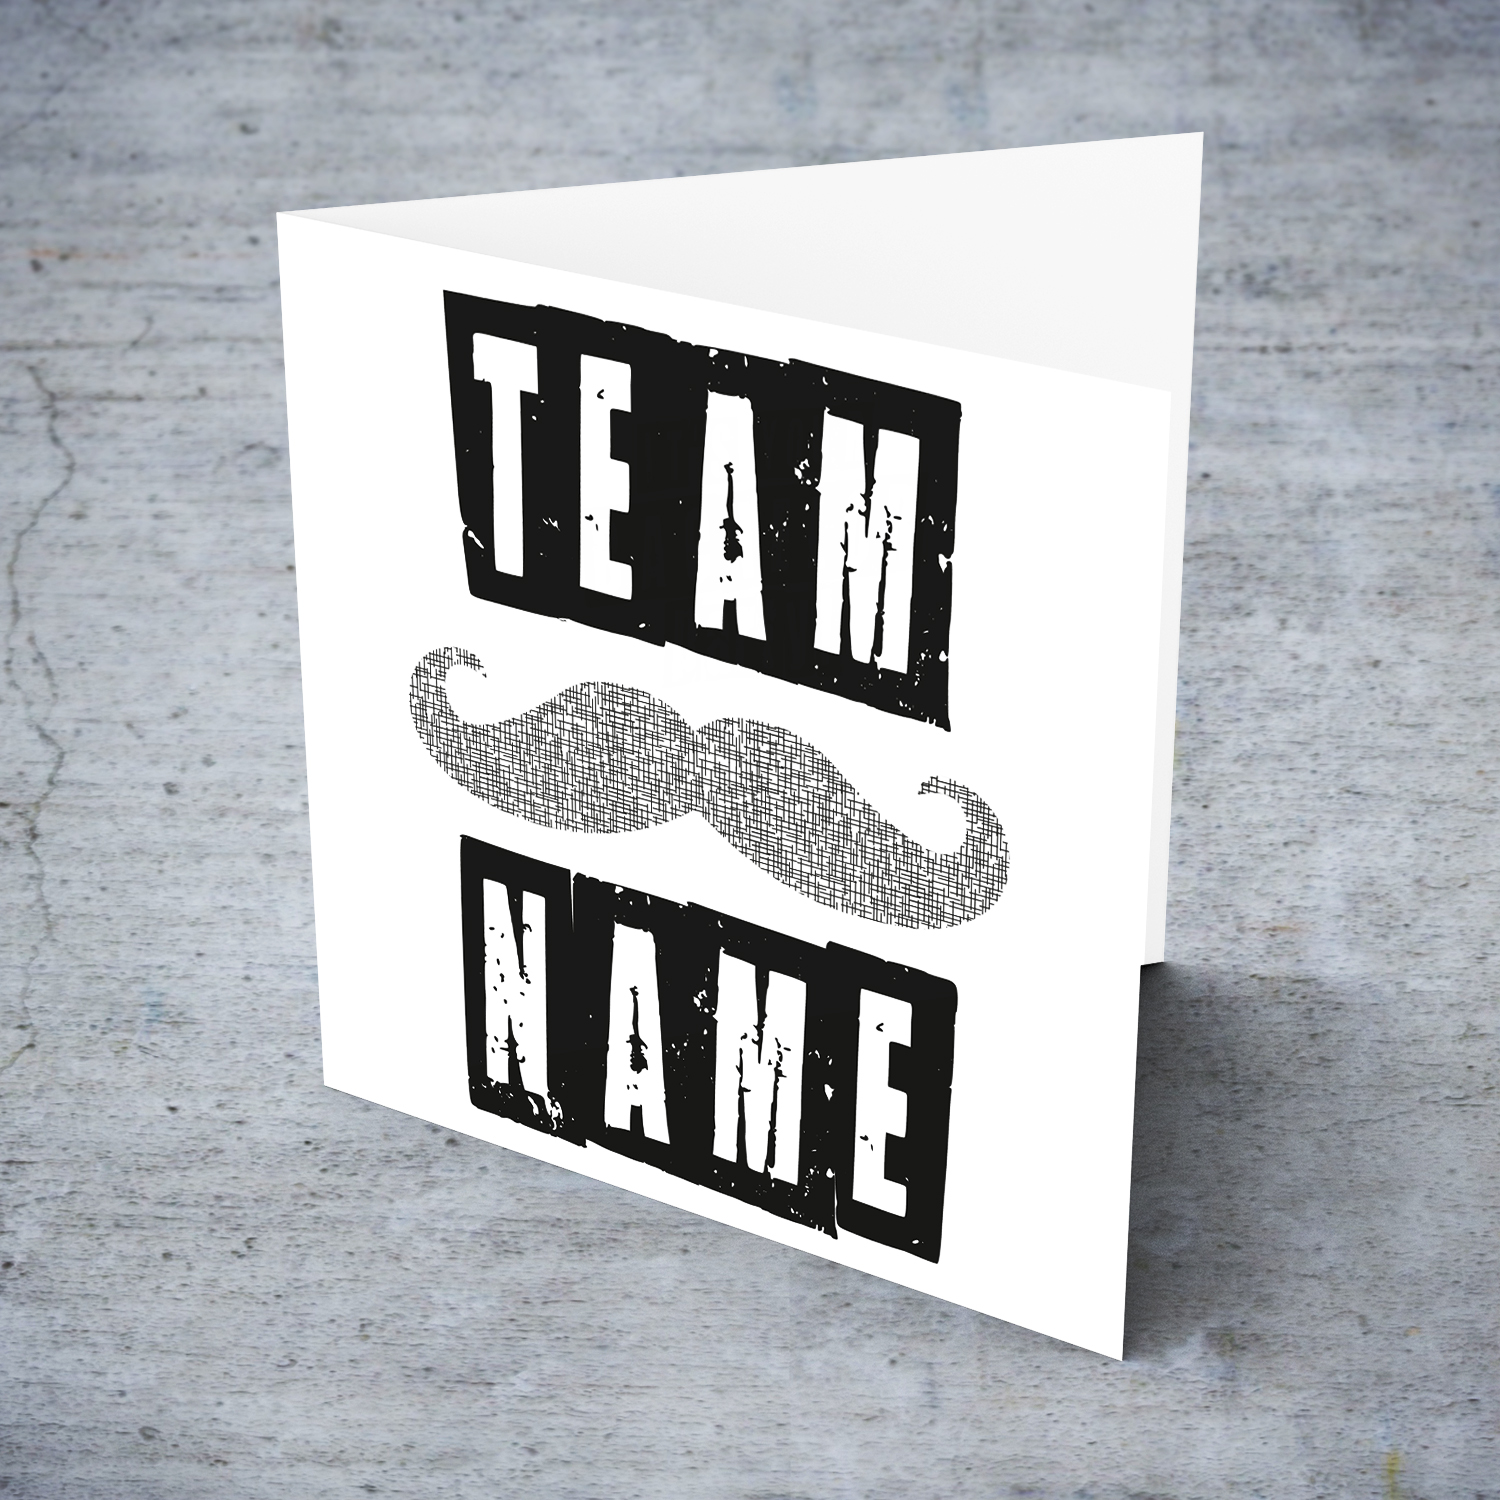 moustache team names